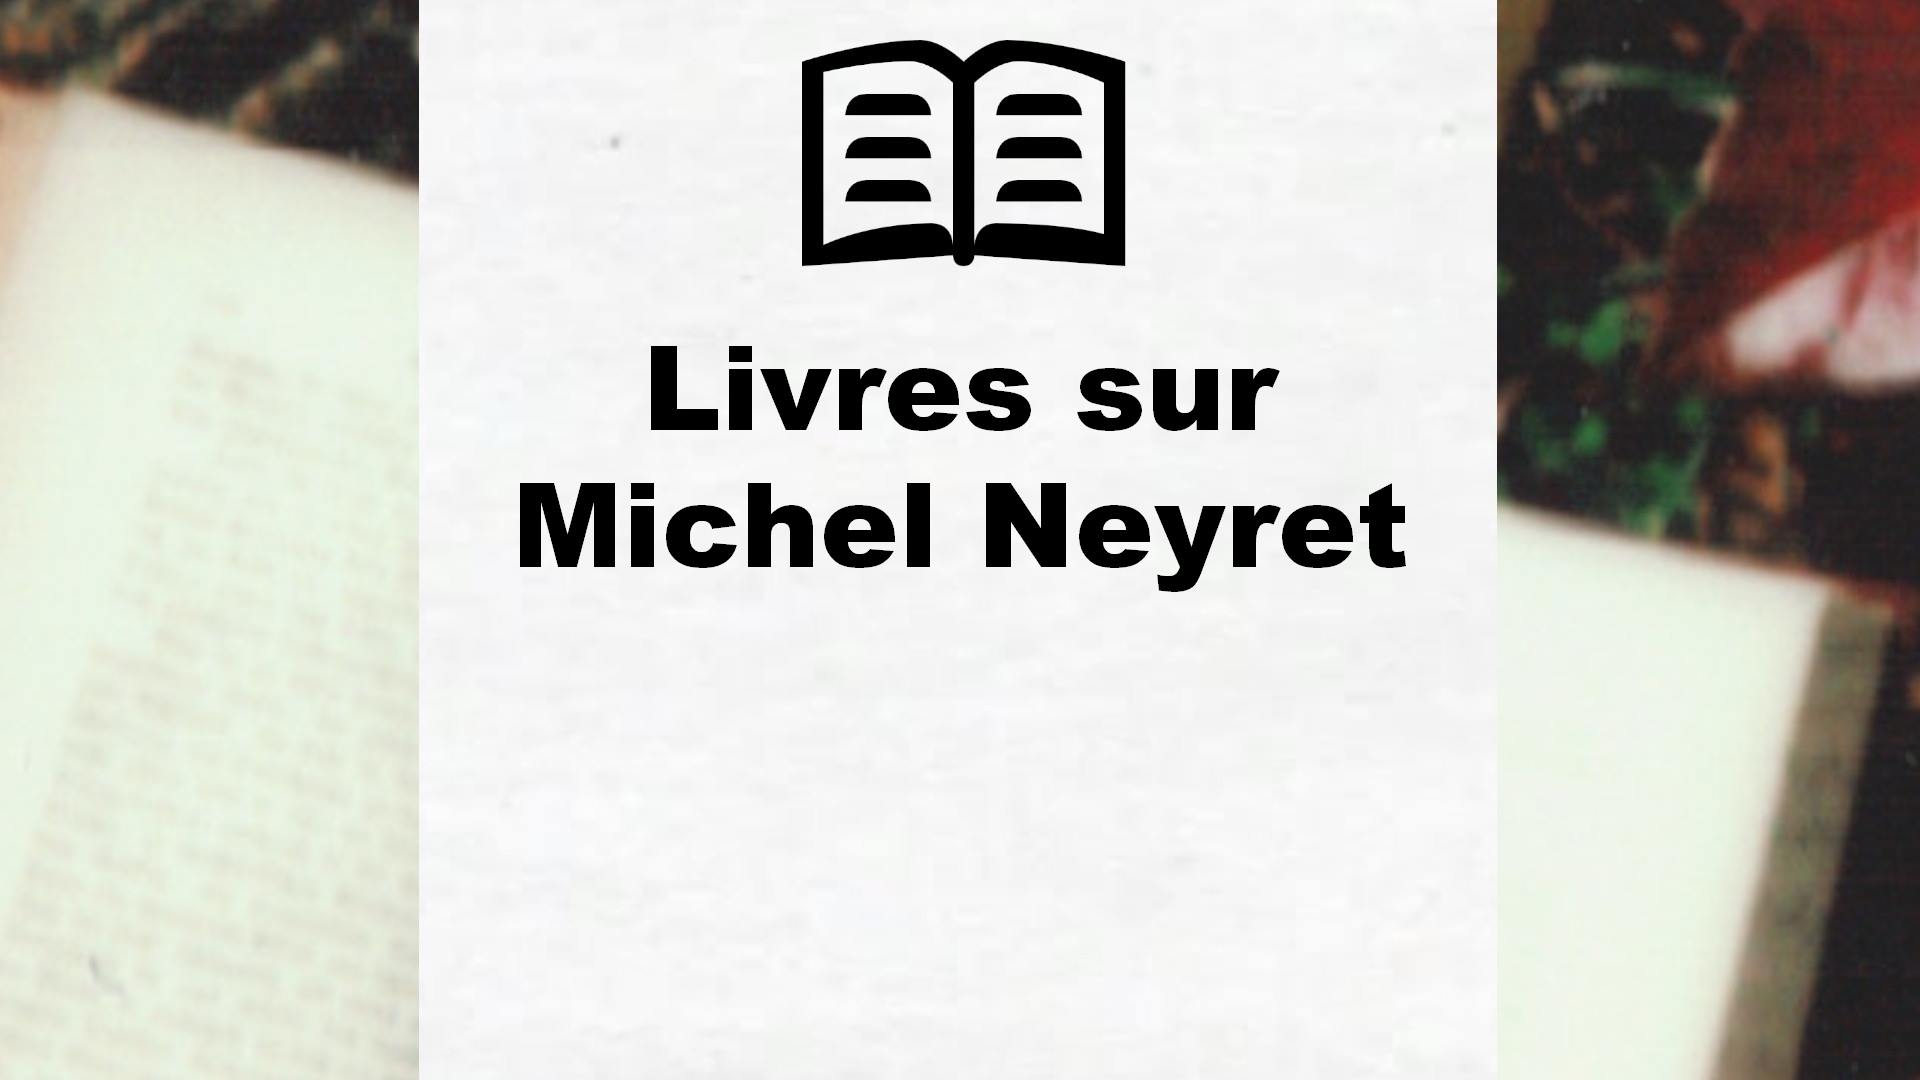 Livres sur Michel Neyret